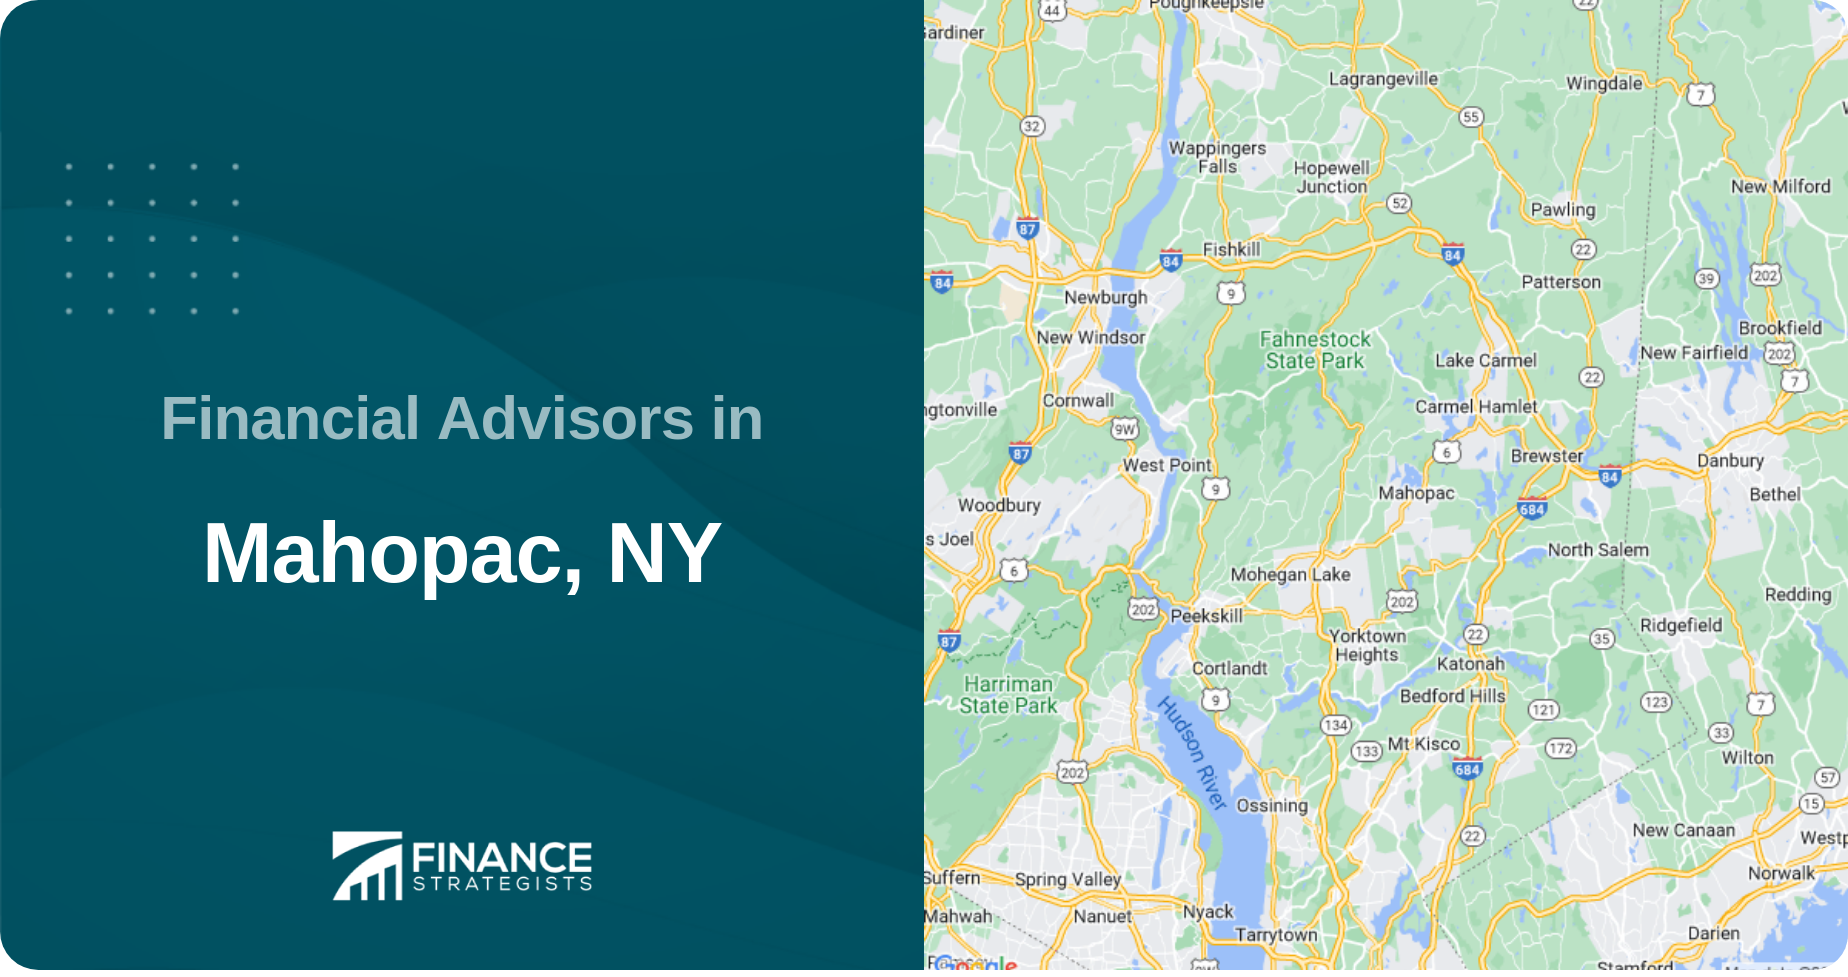 Financial Advisors in Mahopac, NY